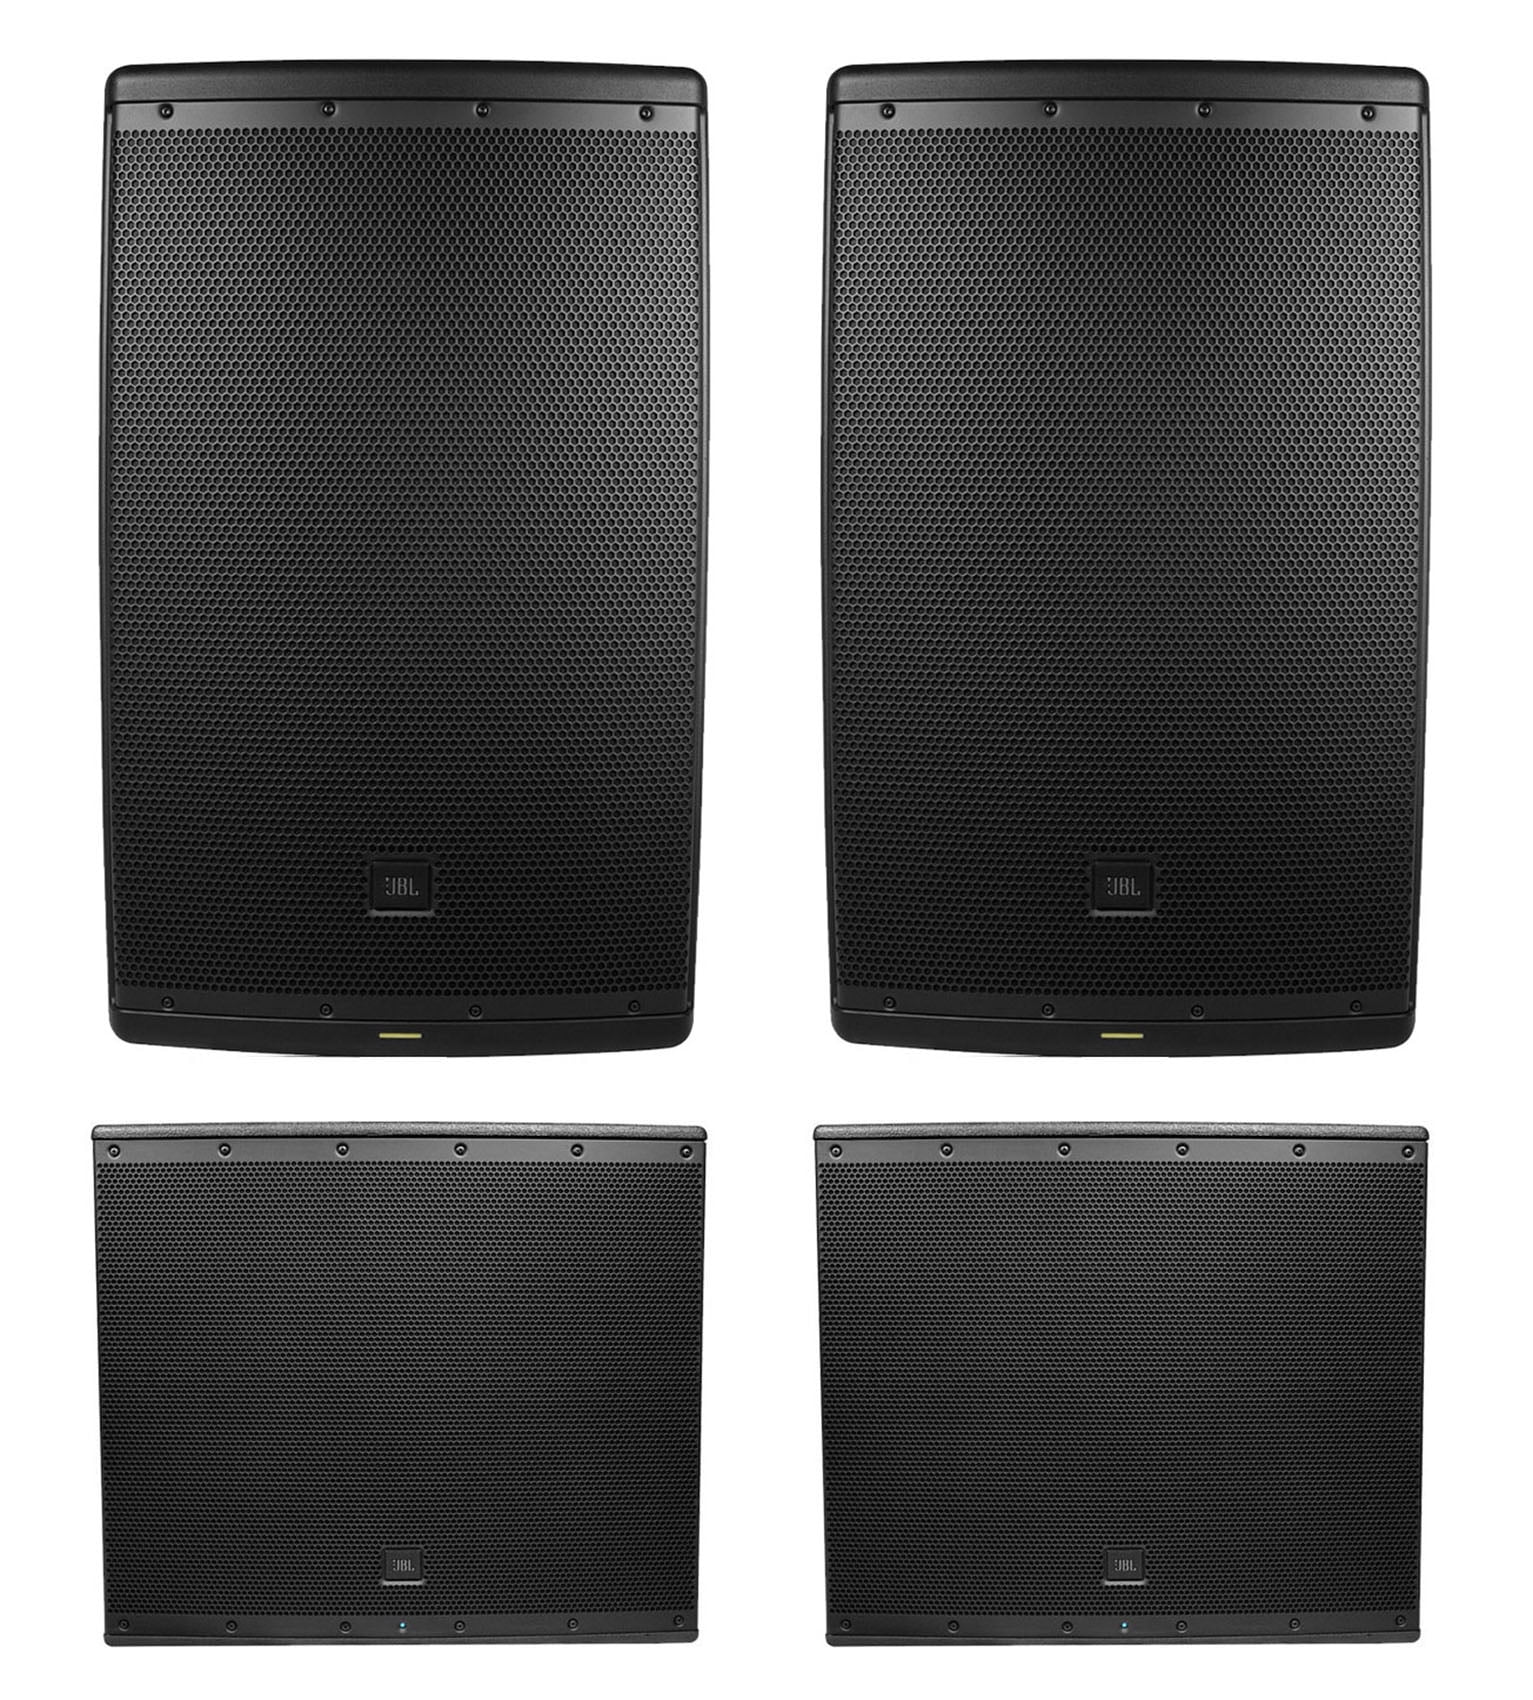 jbl speakers 18 inch 2000 watt price